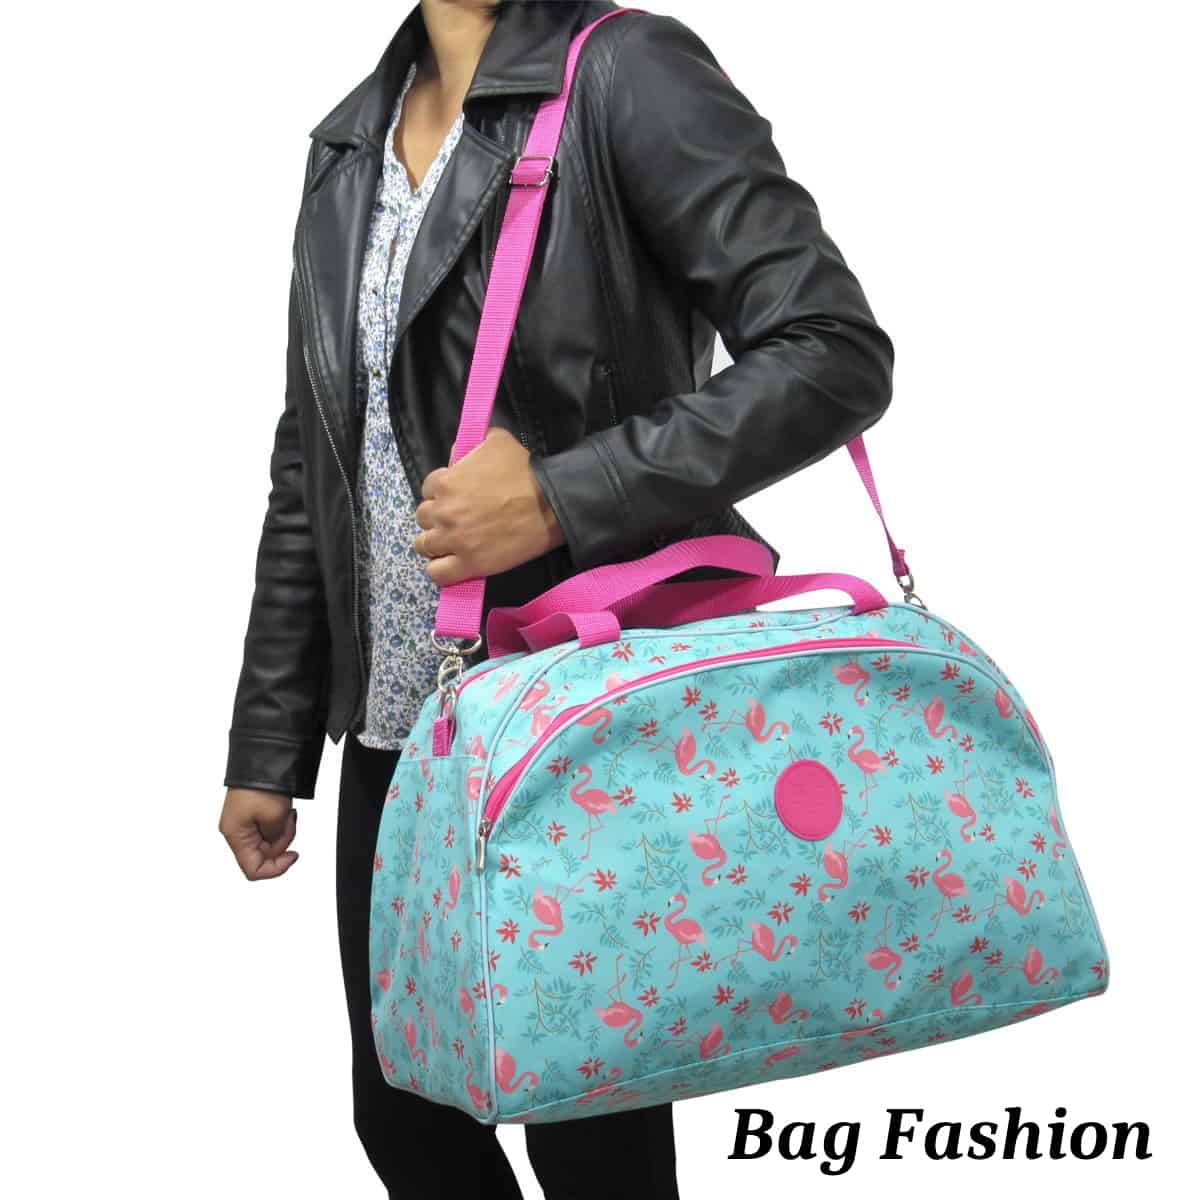 Bag fashion